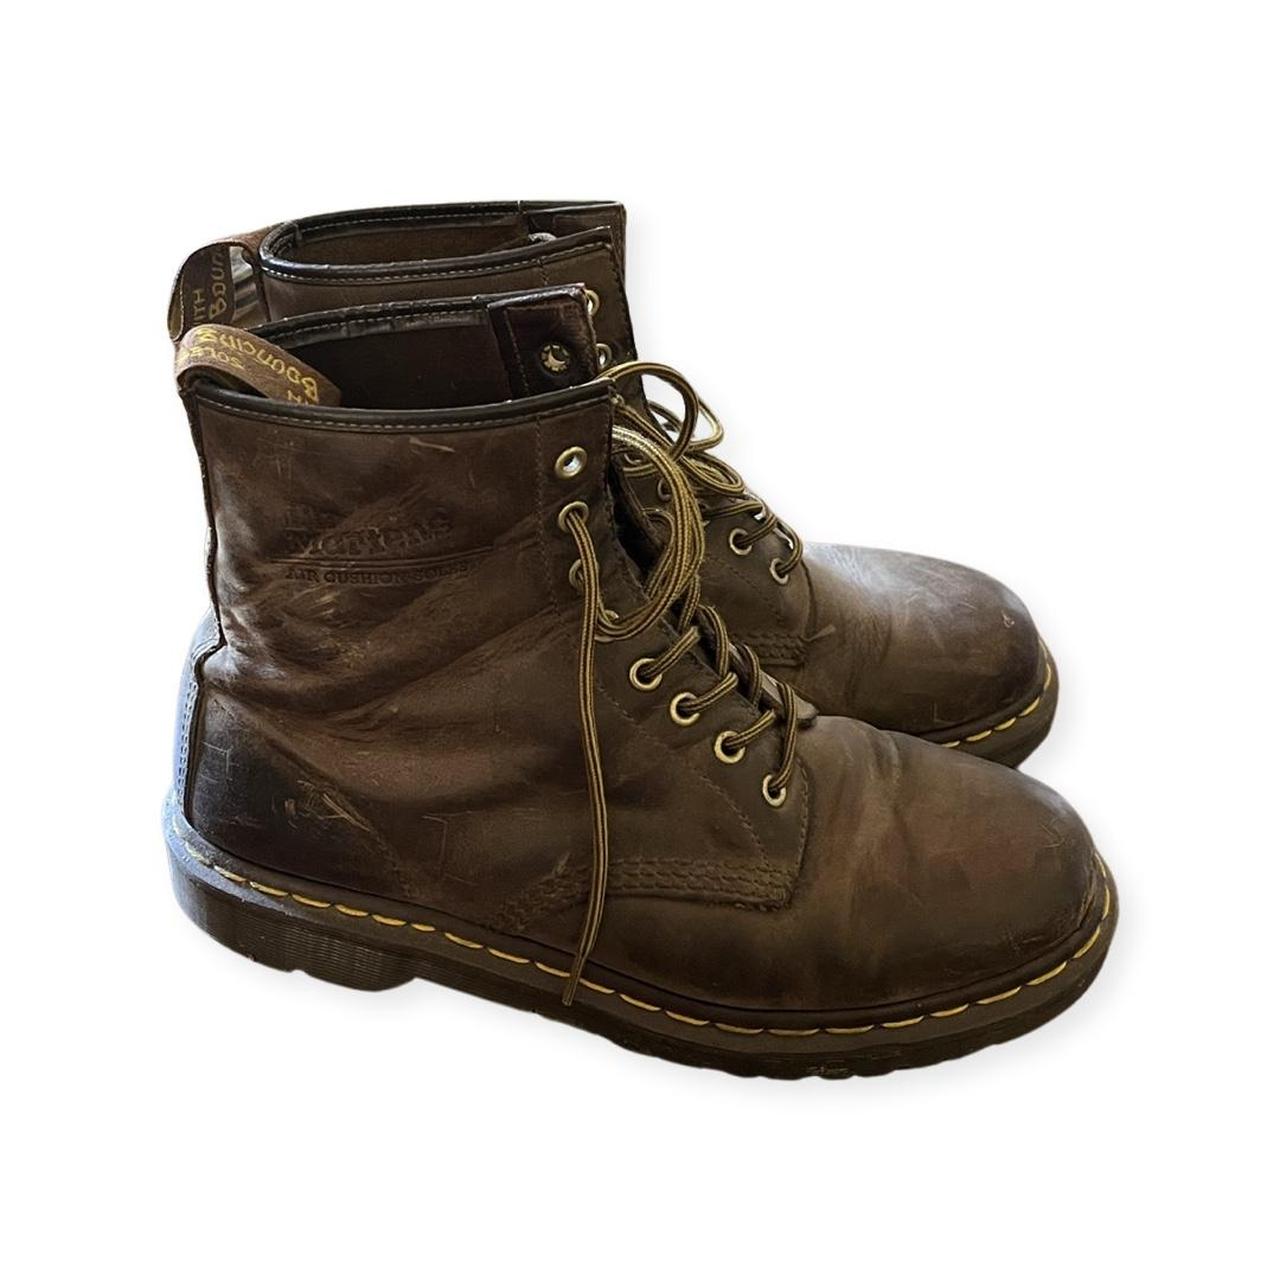 brown vintage doc marten boots, women’s size 9 - a... - Depop